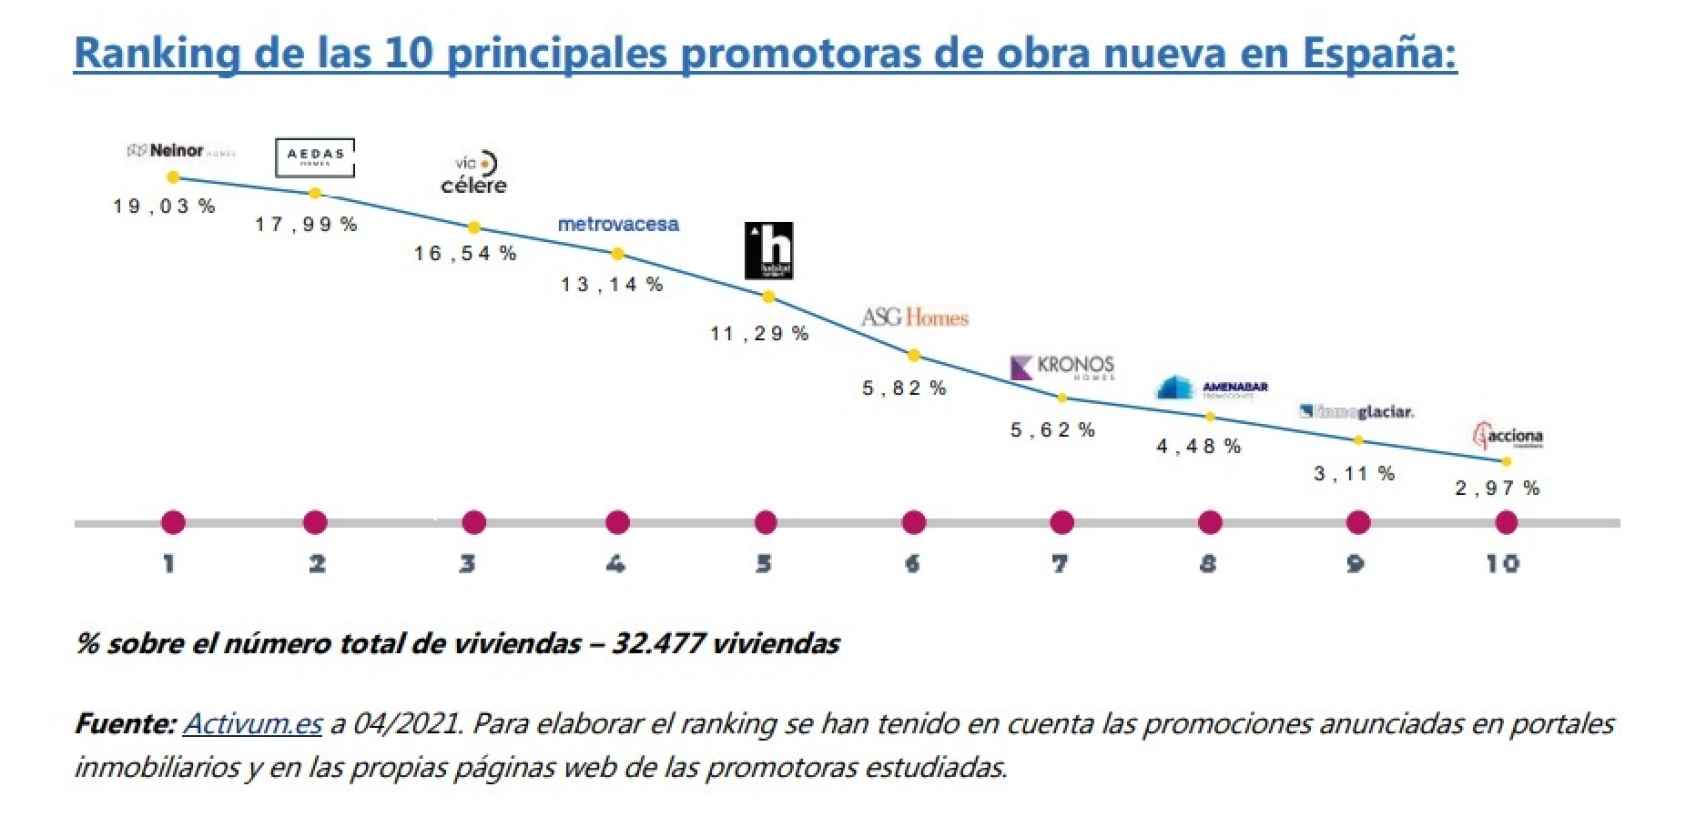 Ranking de las 10 principales promotoras en España.